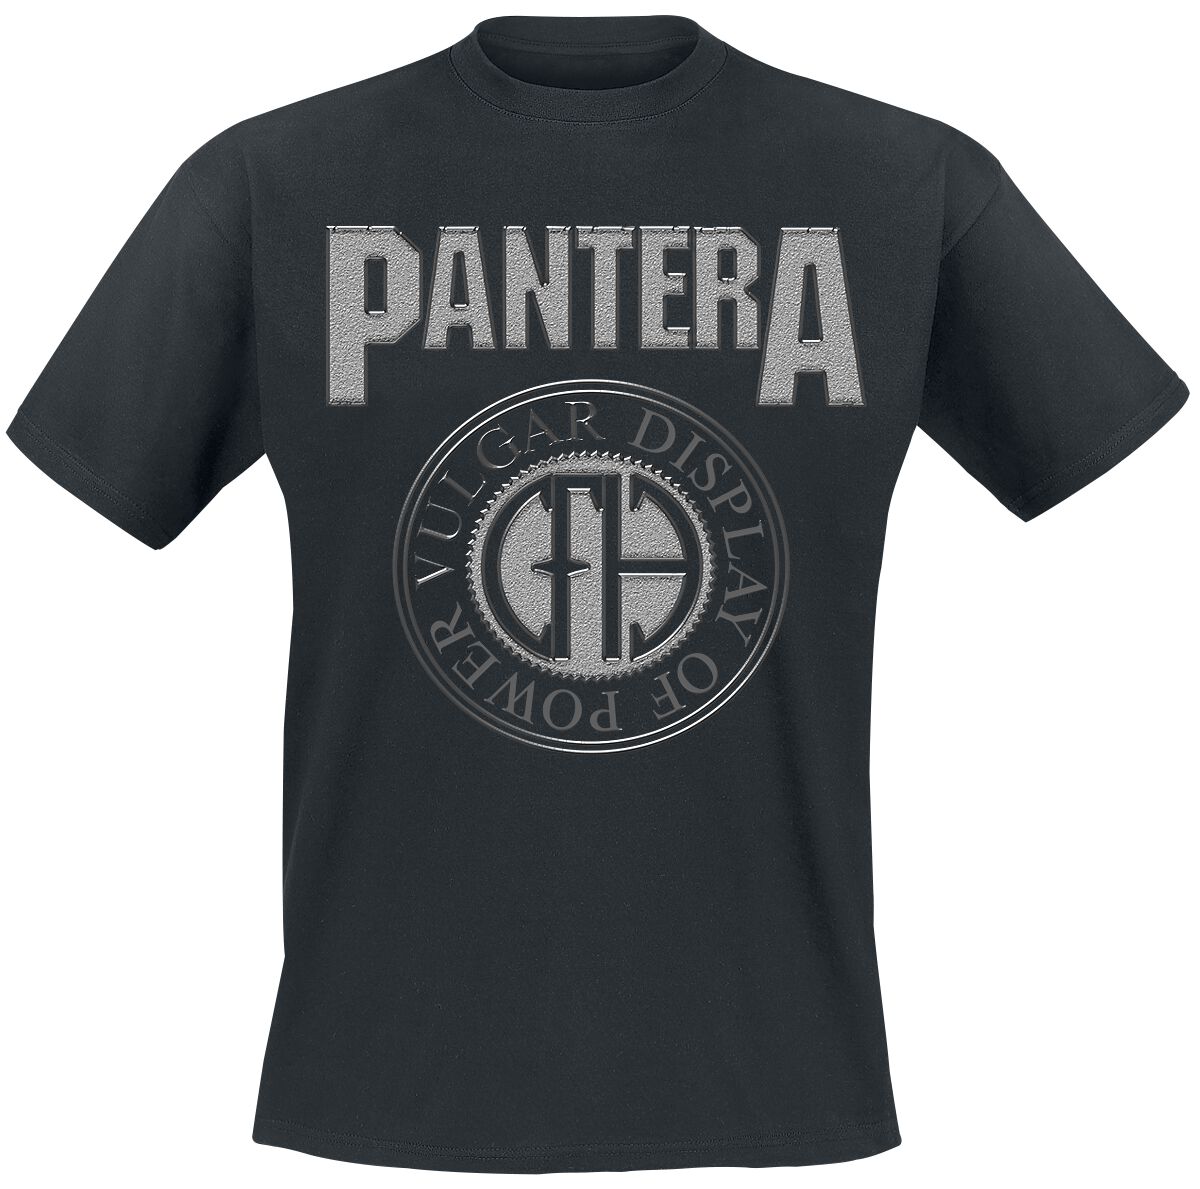 Pantera T-Shirt - S bis XL - für Männer - Größe M - schwarz  - Lizenziertes Merchandise!